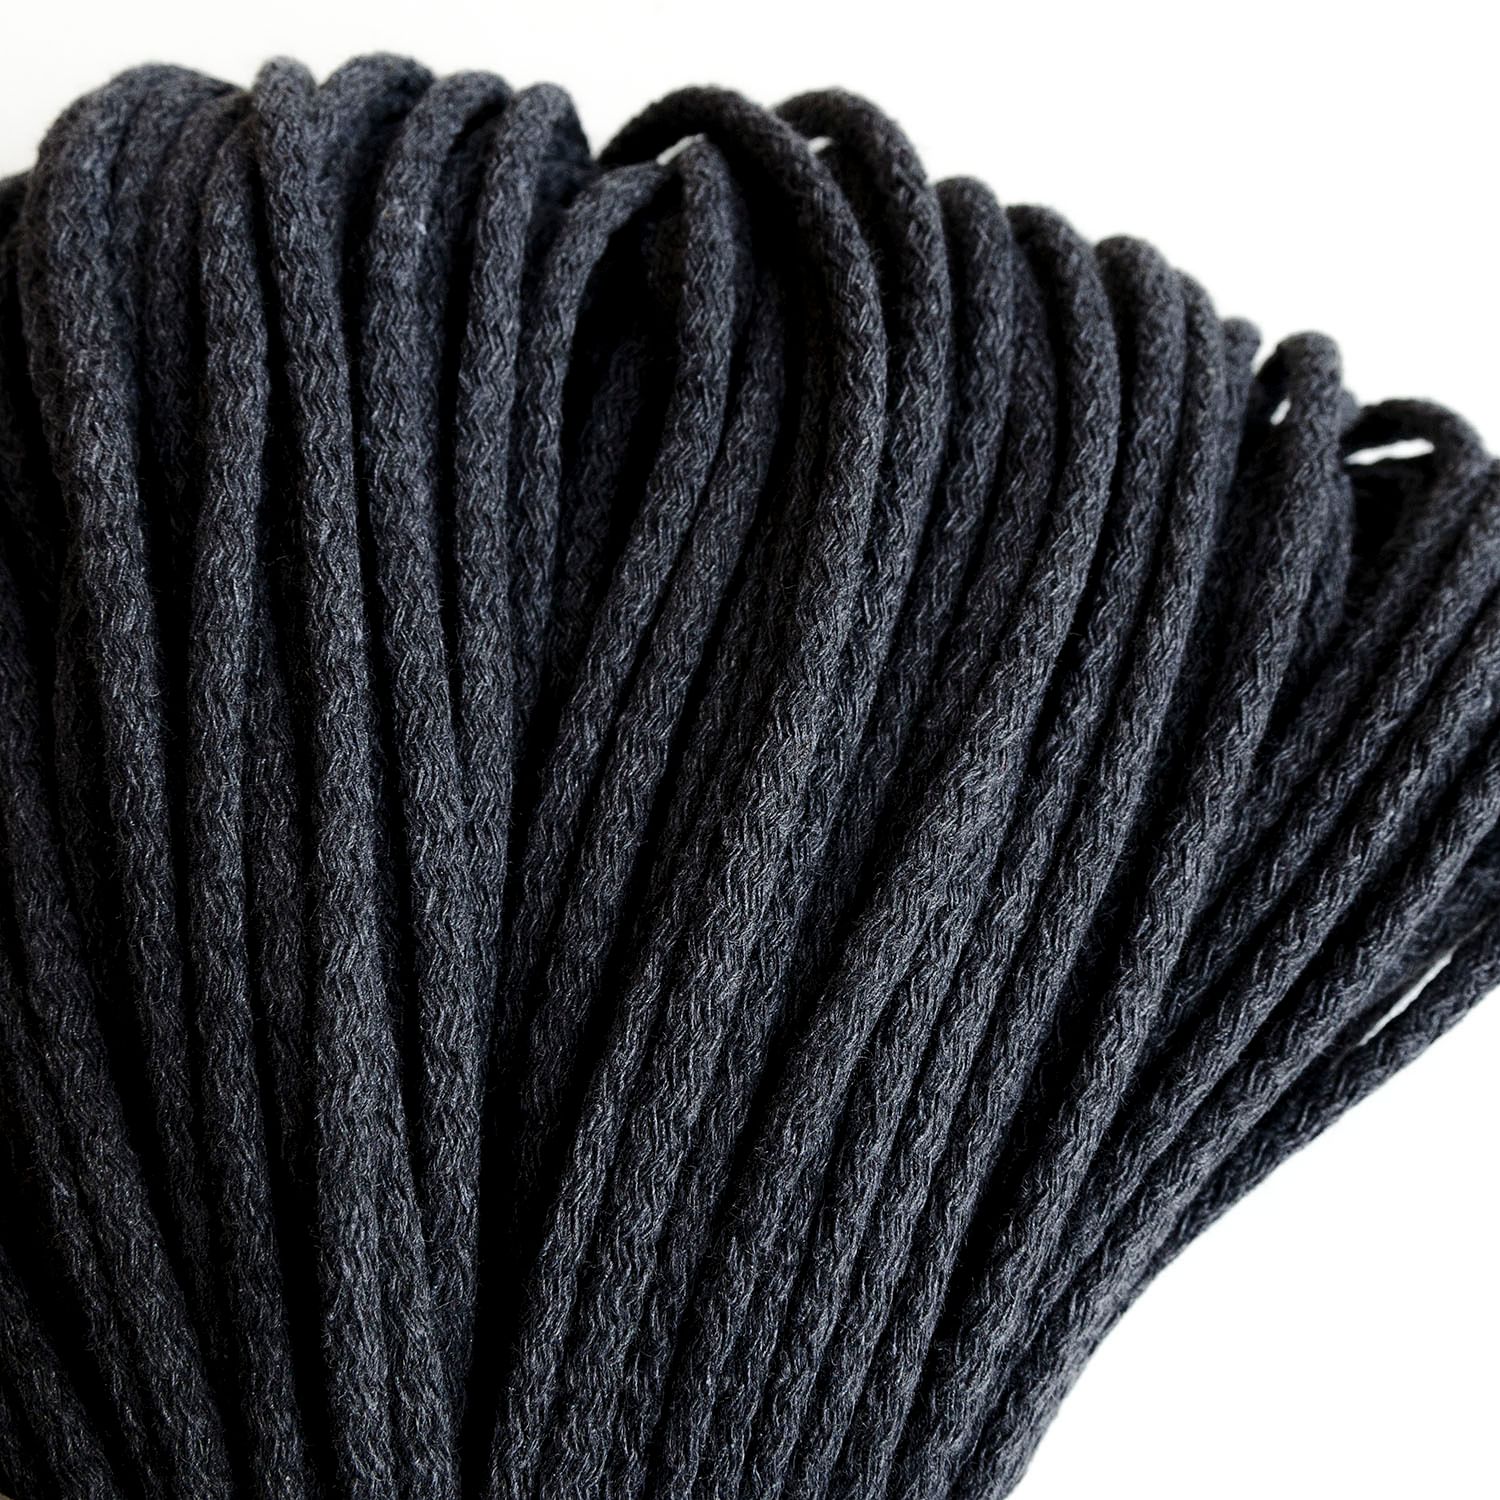 Мастер-класс по изготовлению вязаного шнура из трикотажа «Модное вязание»